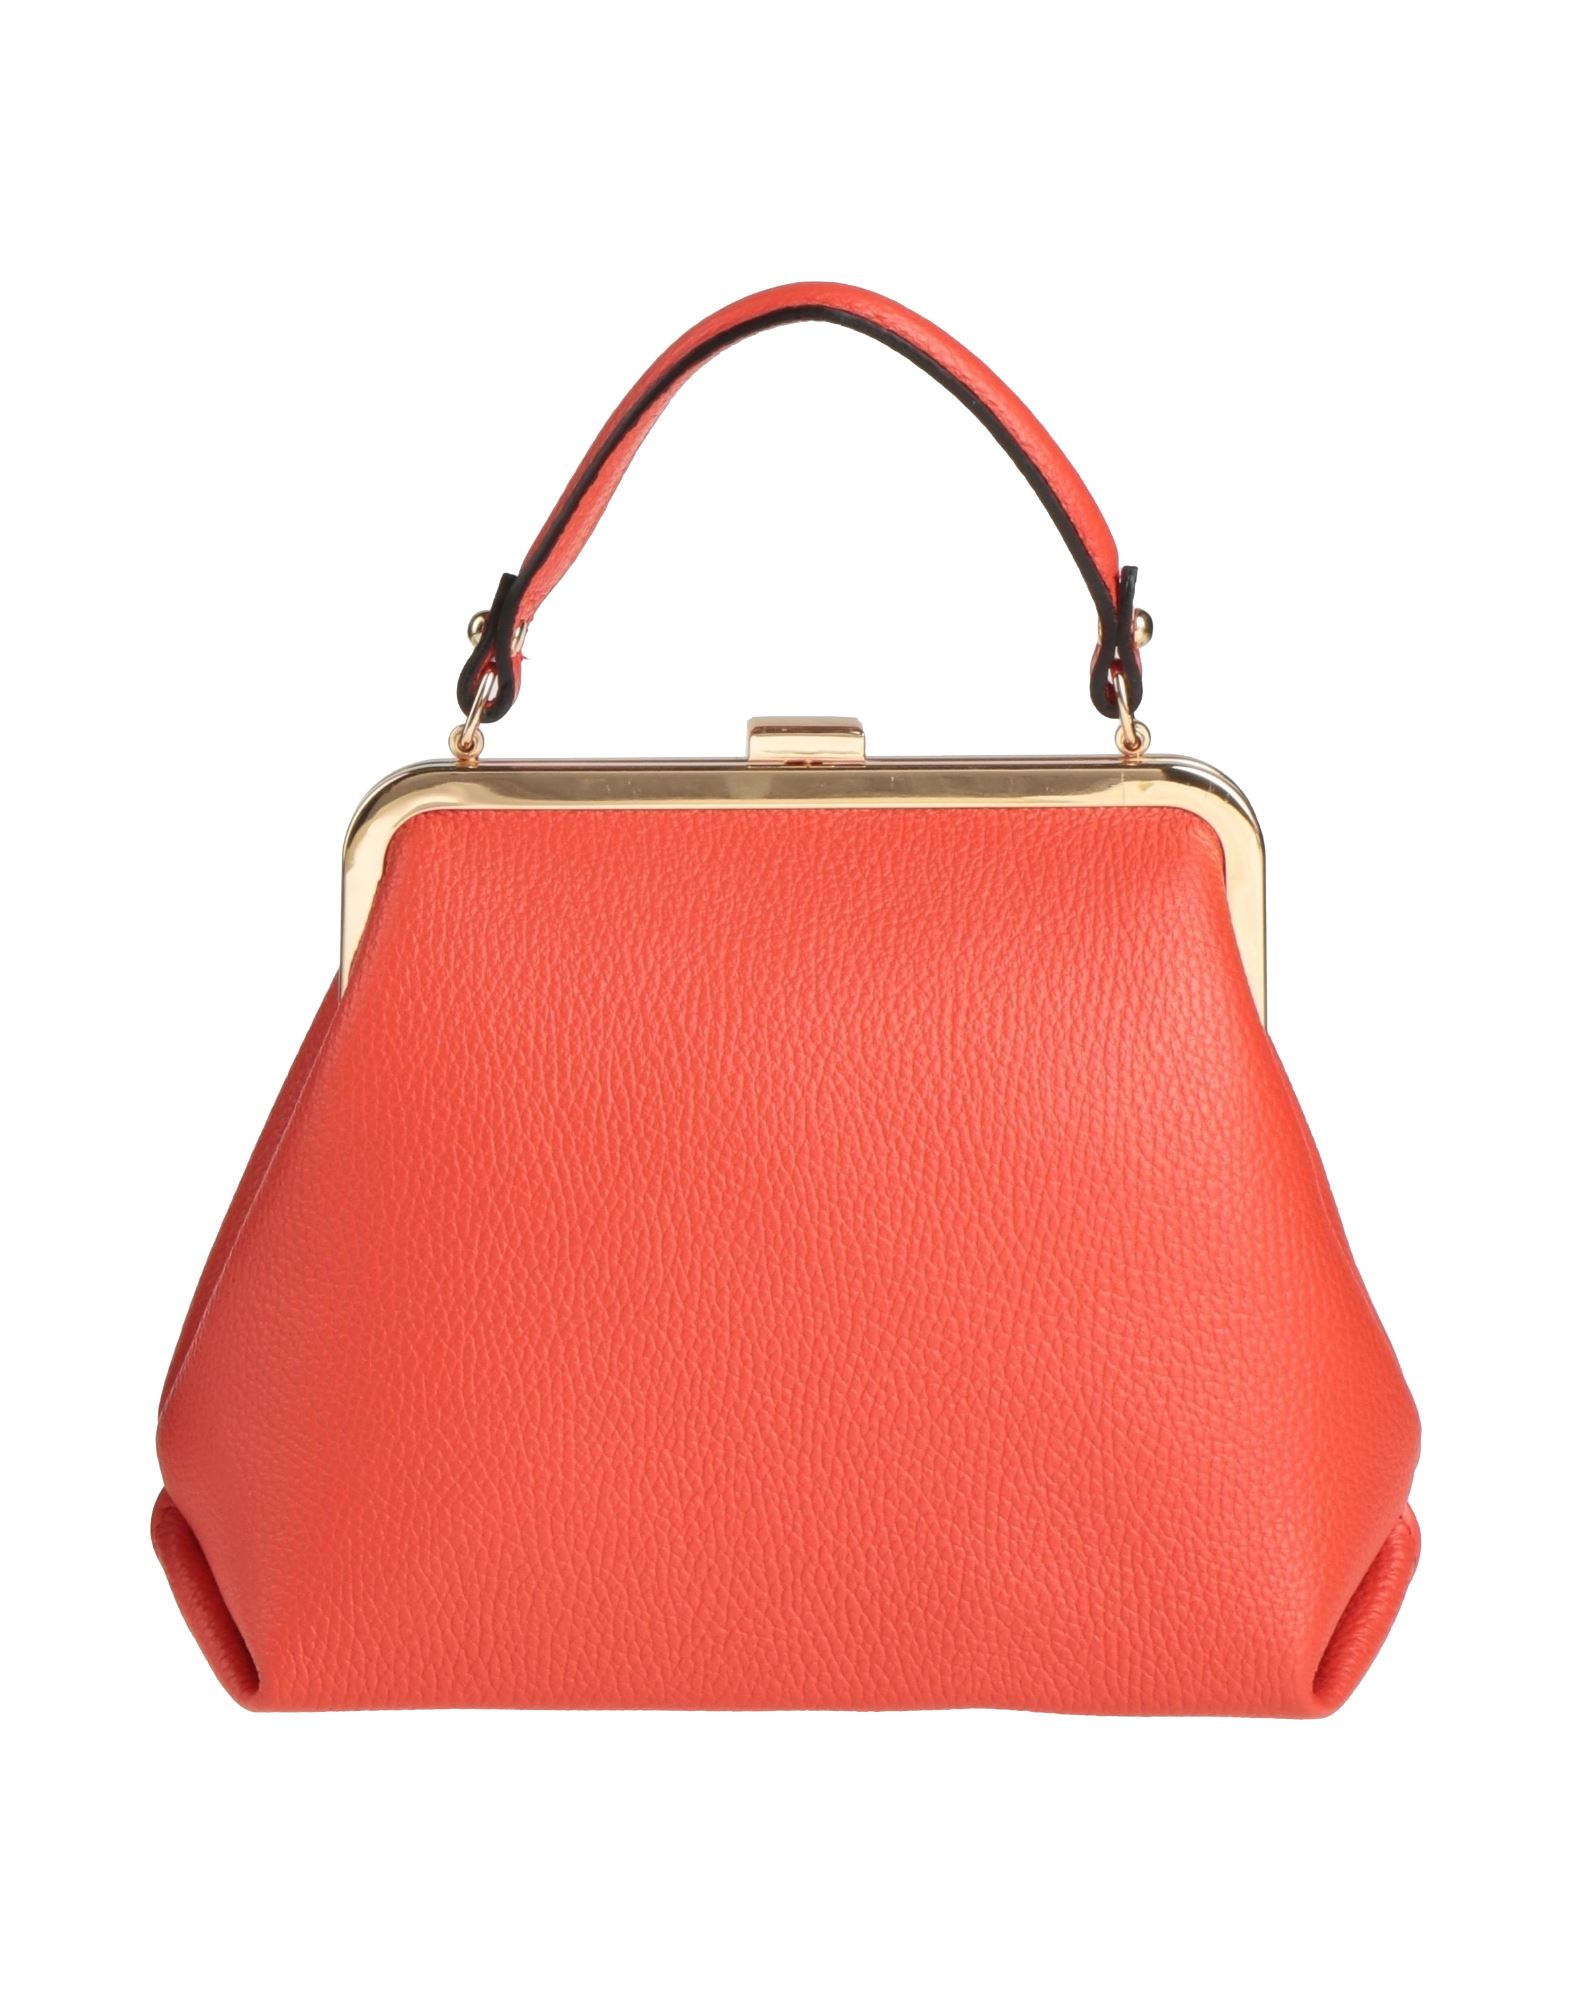 Ab Asia Bellucci Handbags In Tomato Red